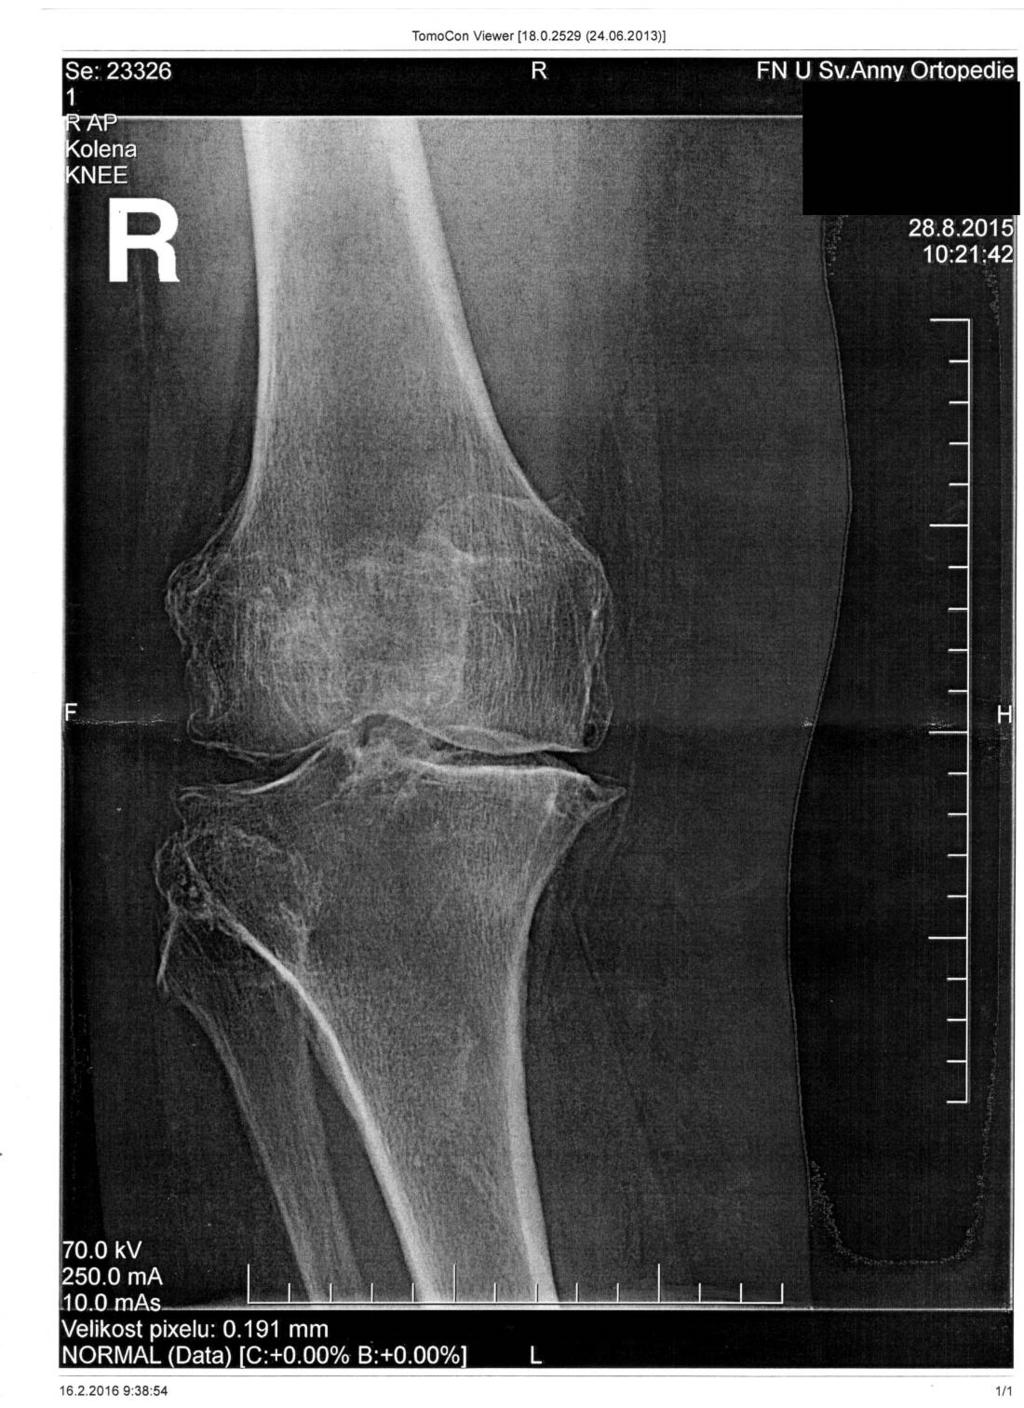 Příloha 3: Rentgenové snímky kolenního kloubu